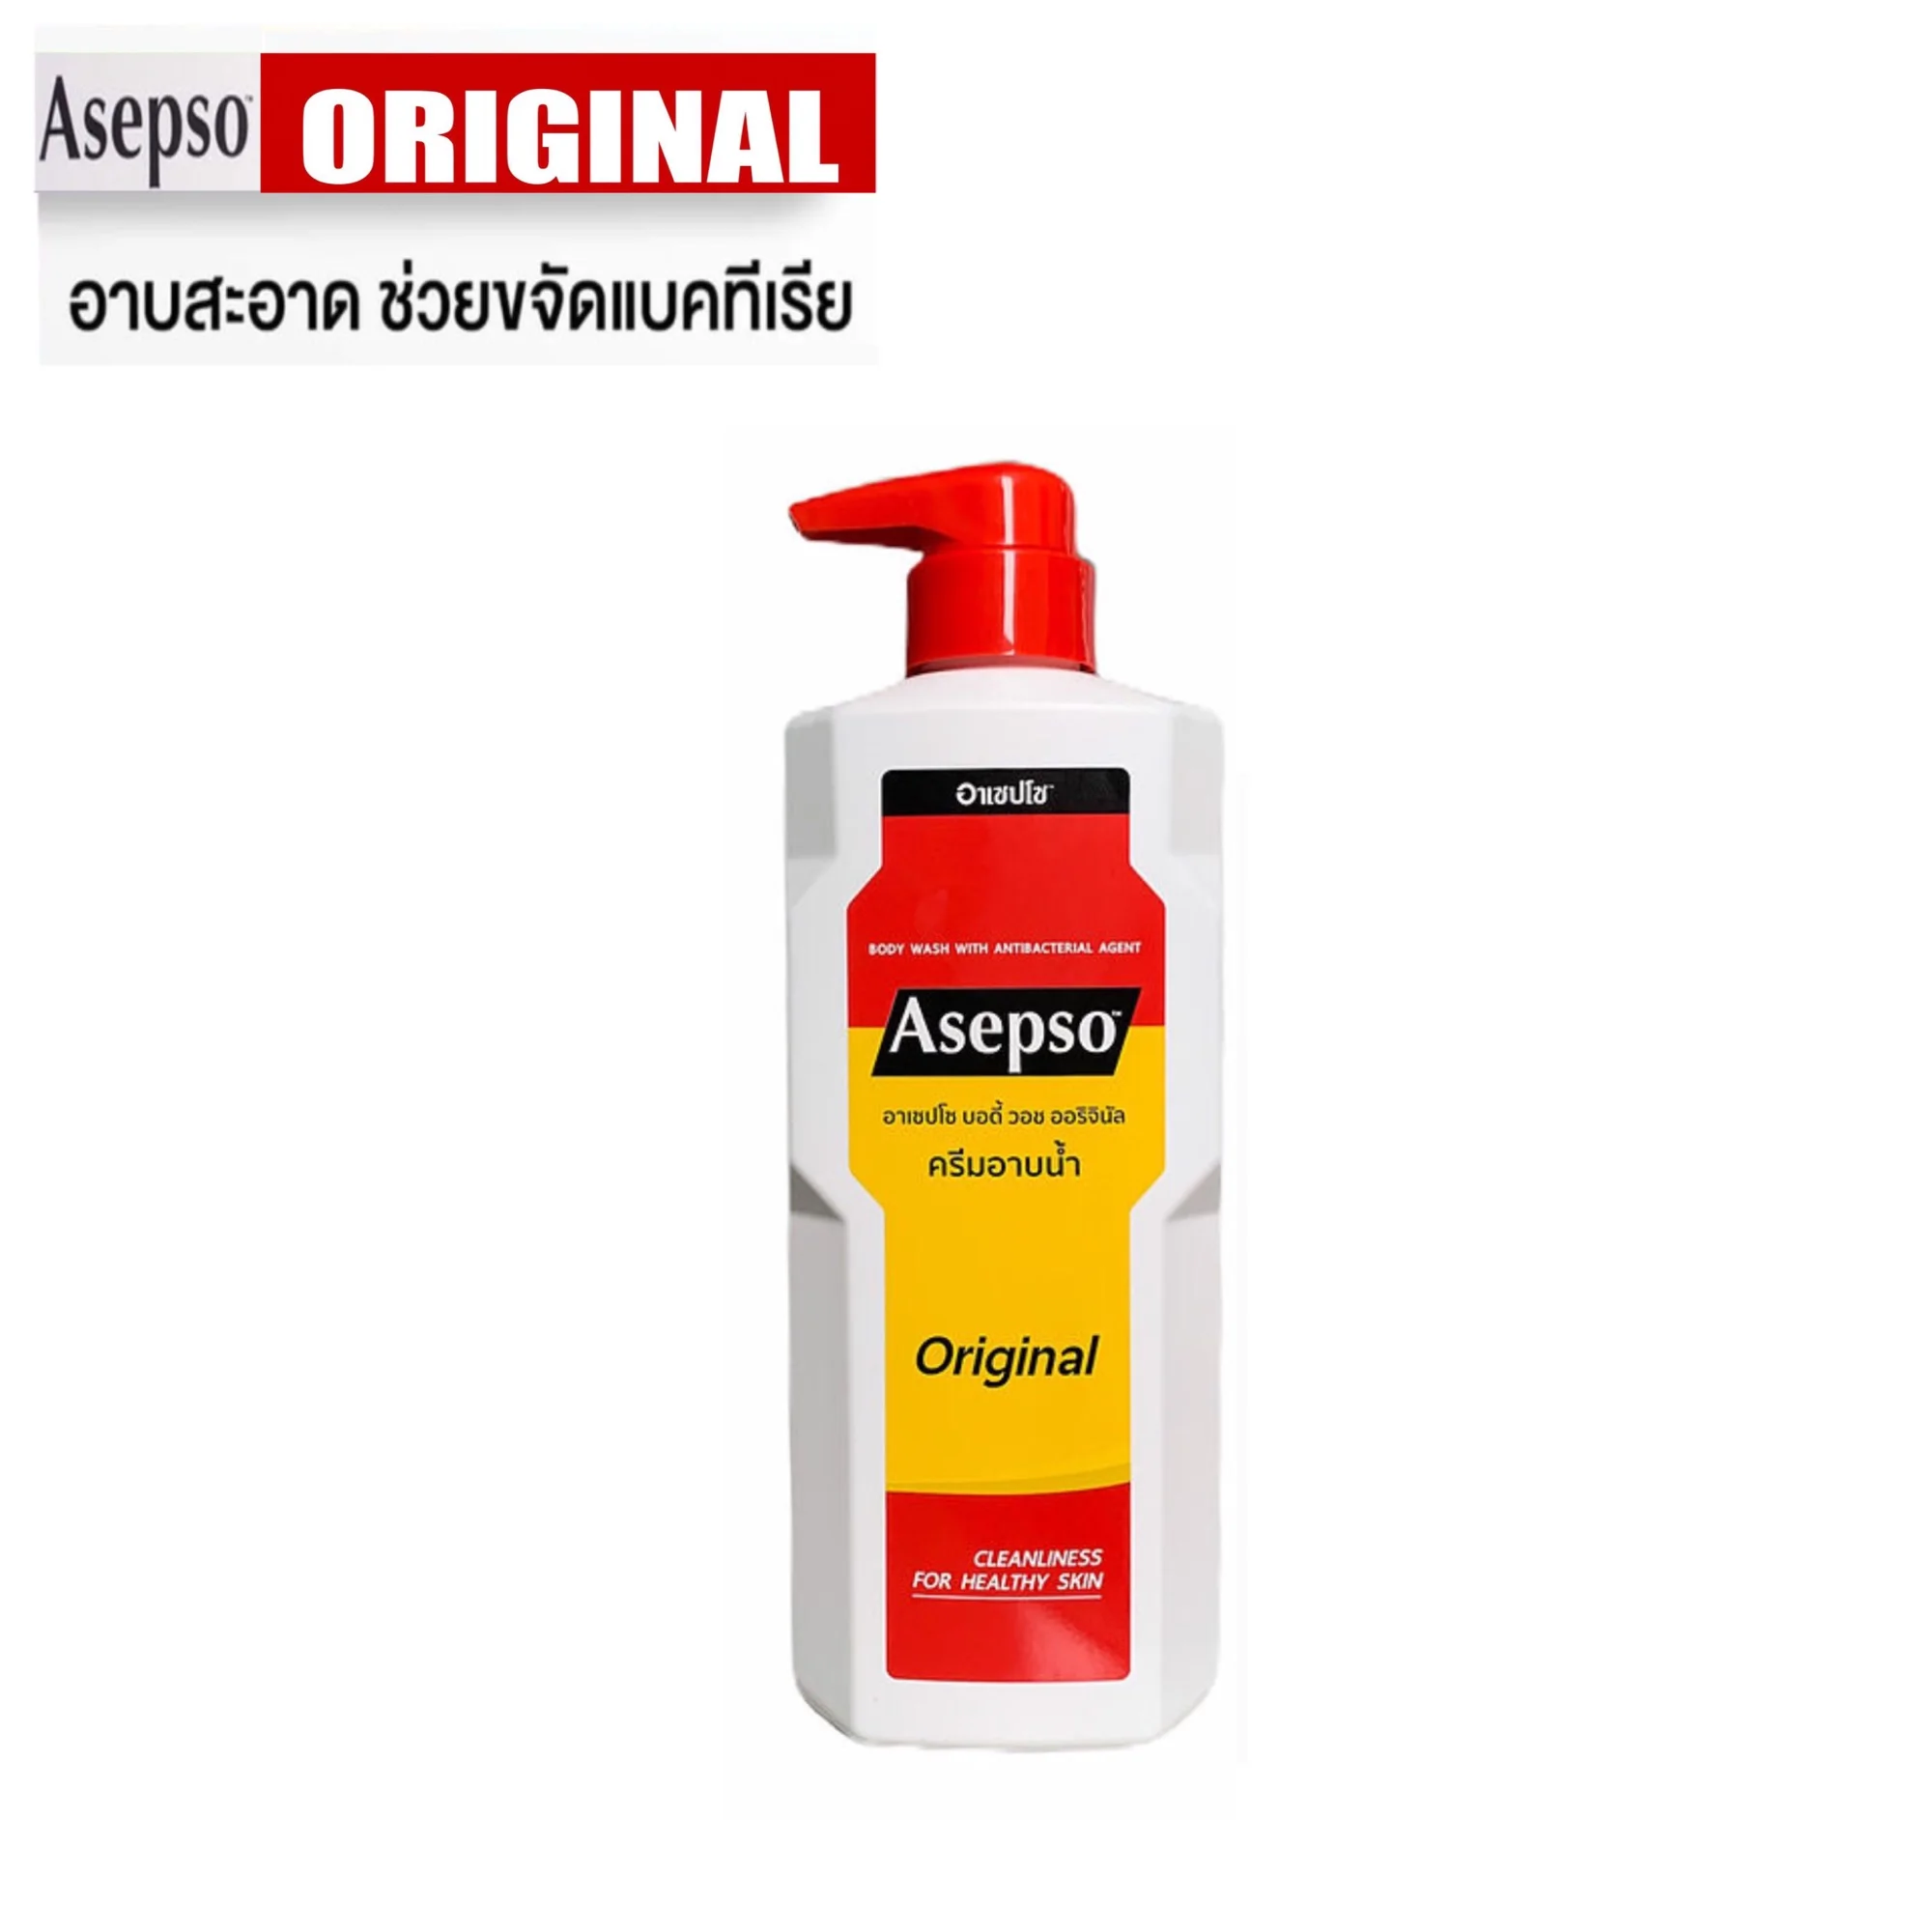 Asepso body wash - original 500 ml. ครีมอาบน้ำ อาเซปโซ สูตรออริจินัล 500 มล.